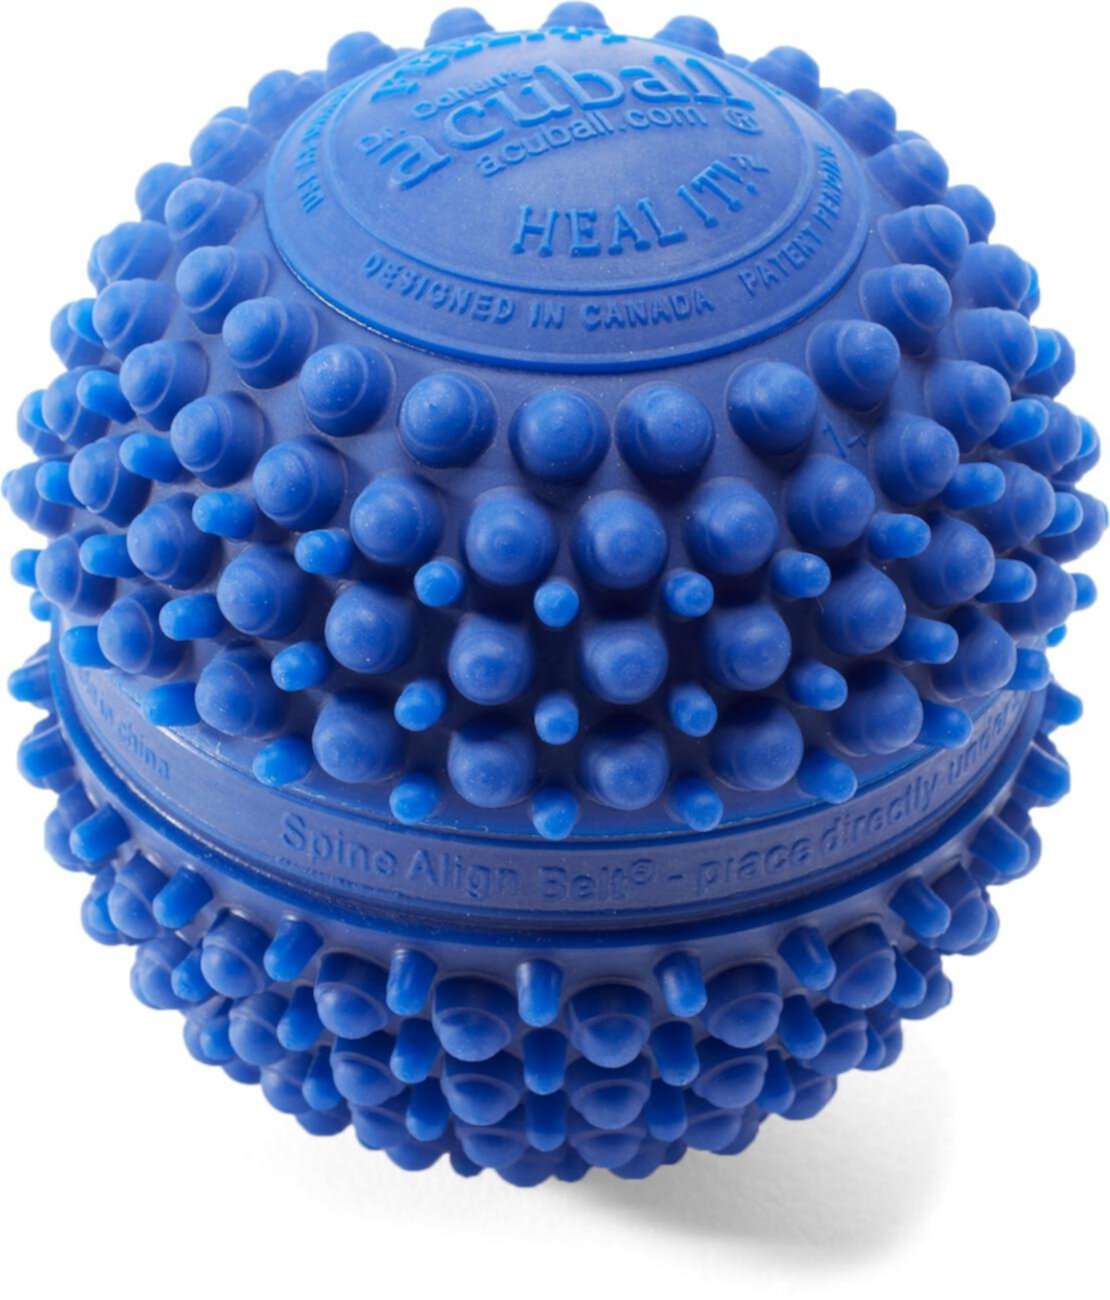 Нагреваемый массажный мяч AcuBall доктора Коэна Pro-Tec Athletics